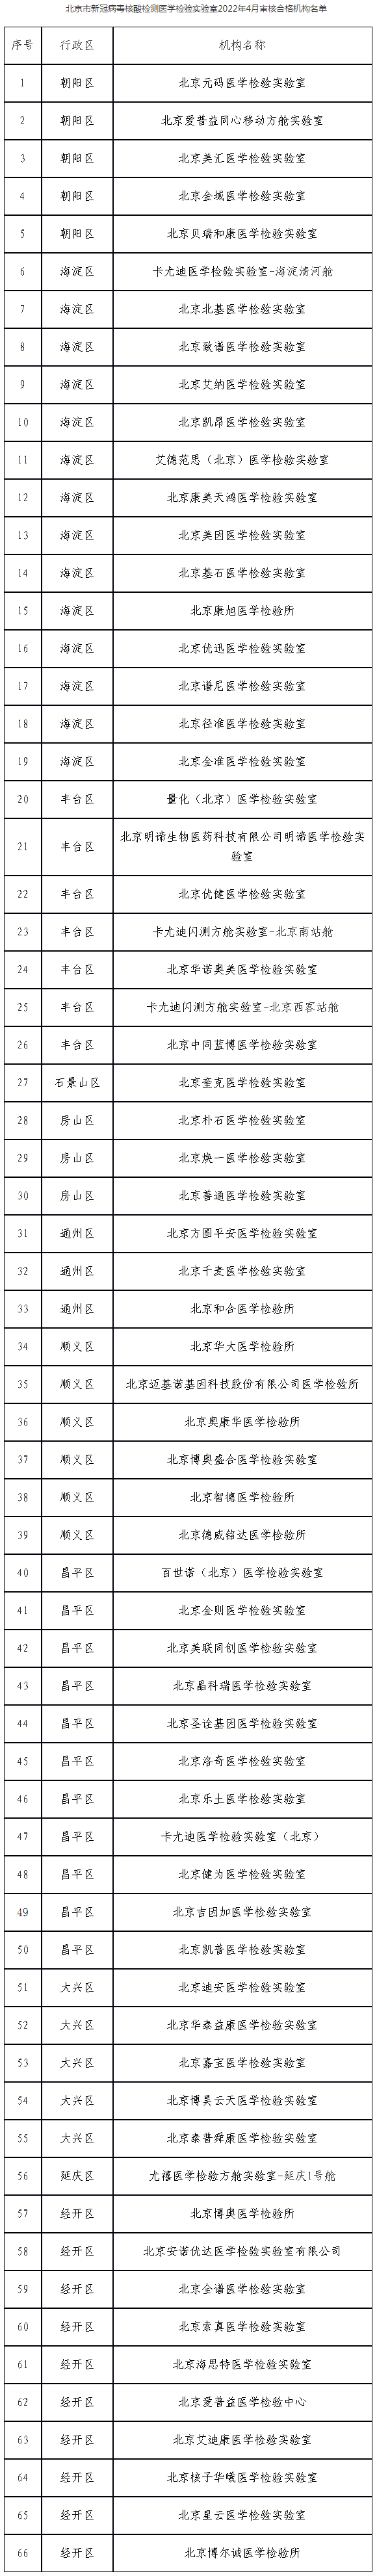 北京市新冠病毒核酸检测医学检验实验室2022年4月审核合格机构名单